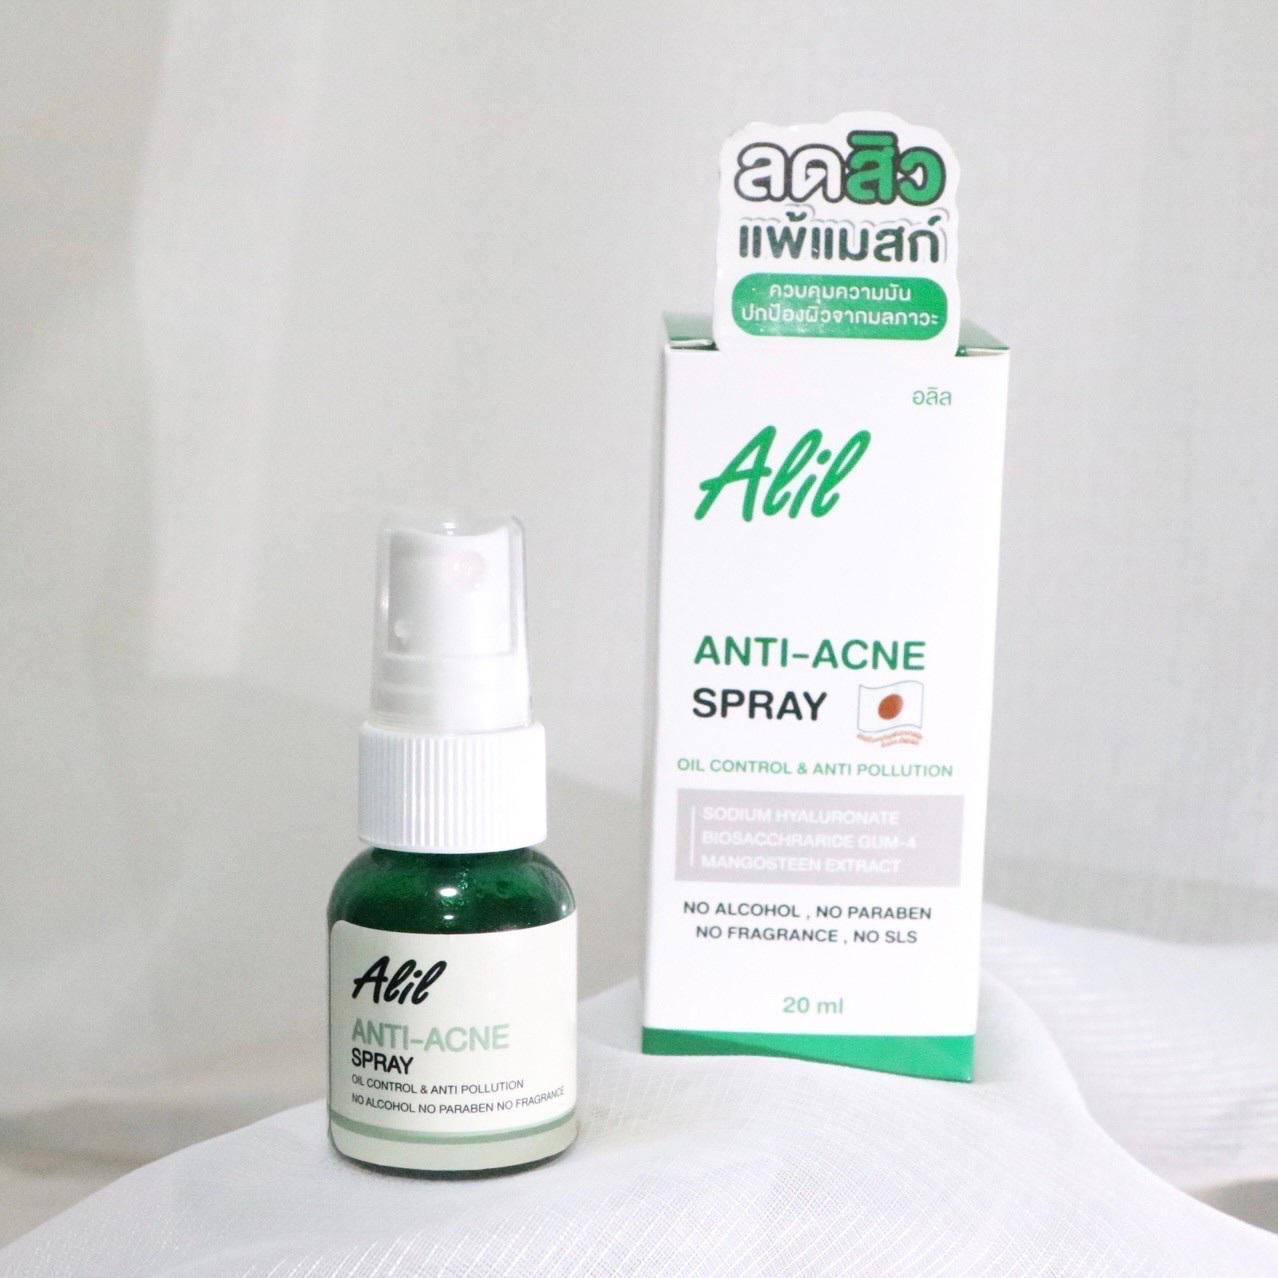 ภาพหน้าปก ใส่แมส์กทุกวัน ลดความอับชื้นลดสิวด้วย Alil Anti-Acne Spray สเปรย์ฉีดลดสิว!  ที่:1